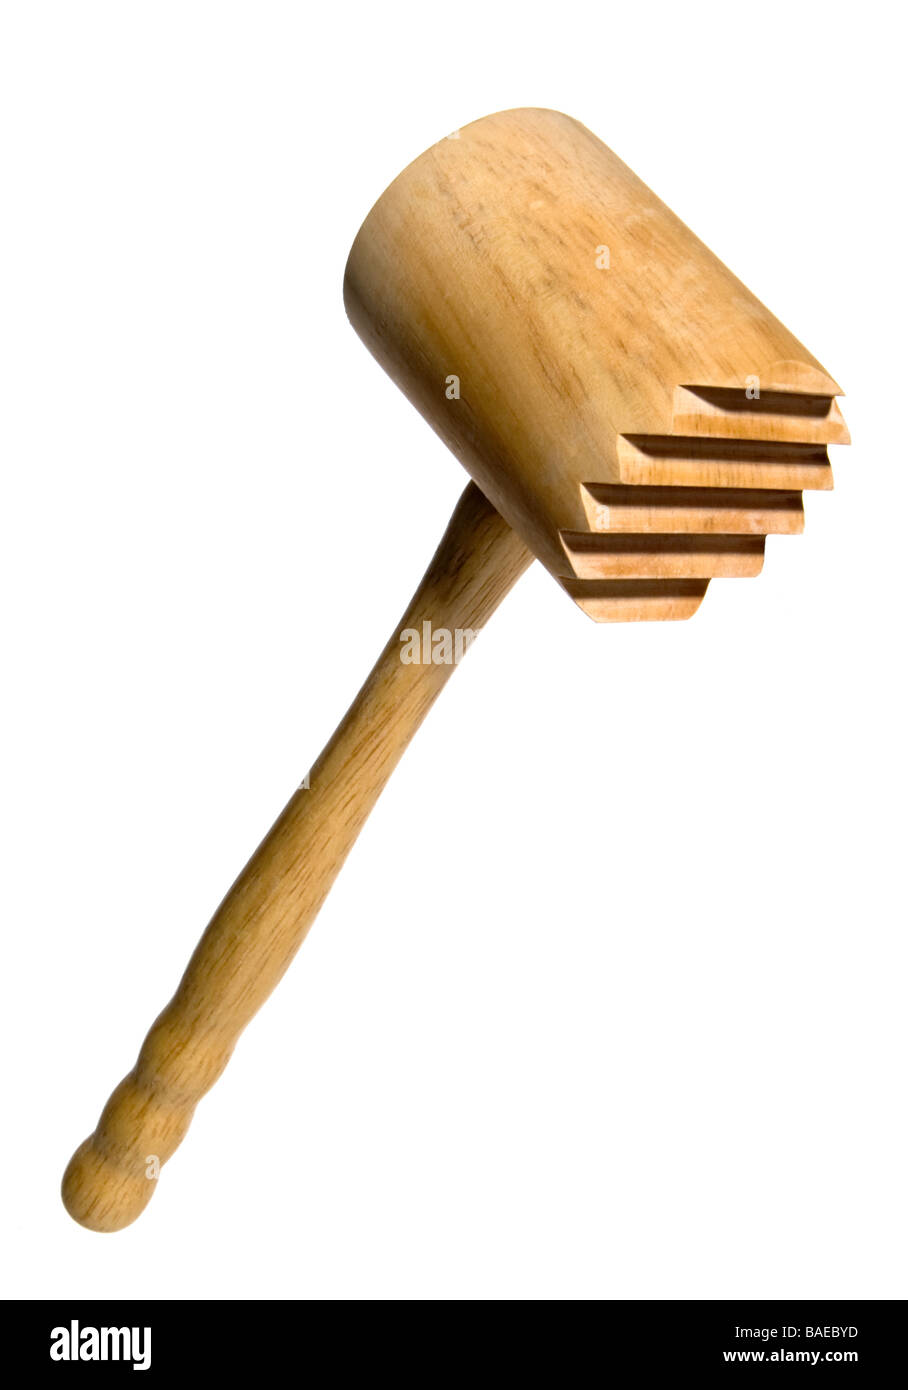 Carne de madera maceta tenderiser aislado en blanco, cabeza de martillo mirando a la derecha, composición vertical Foto de stock